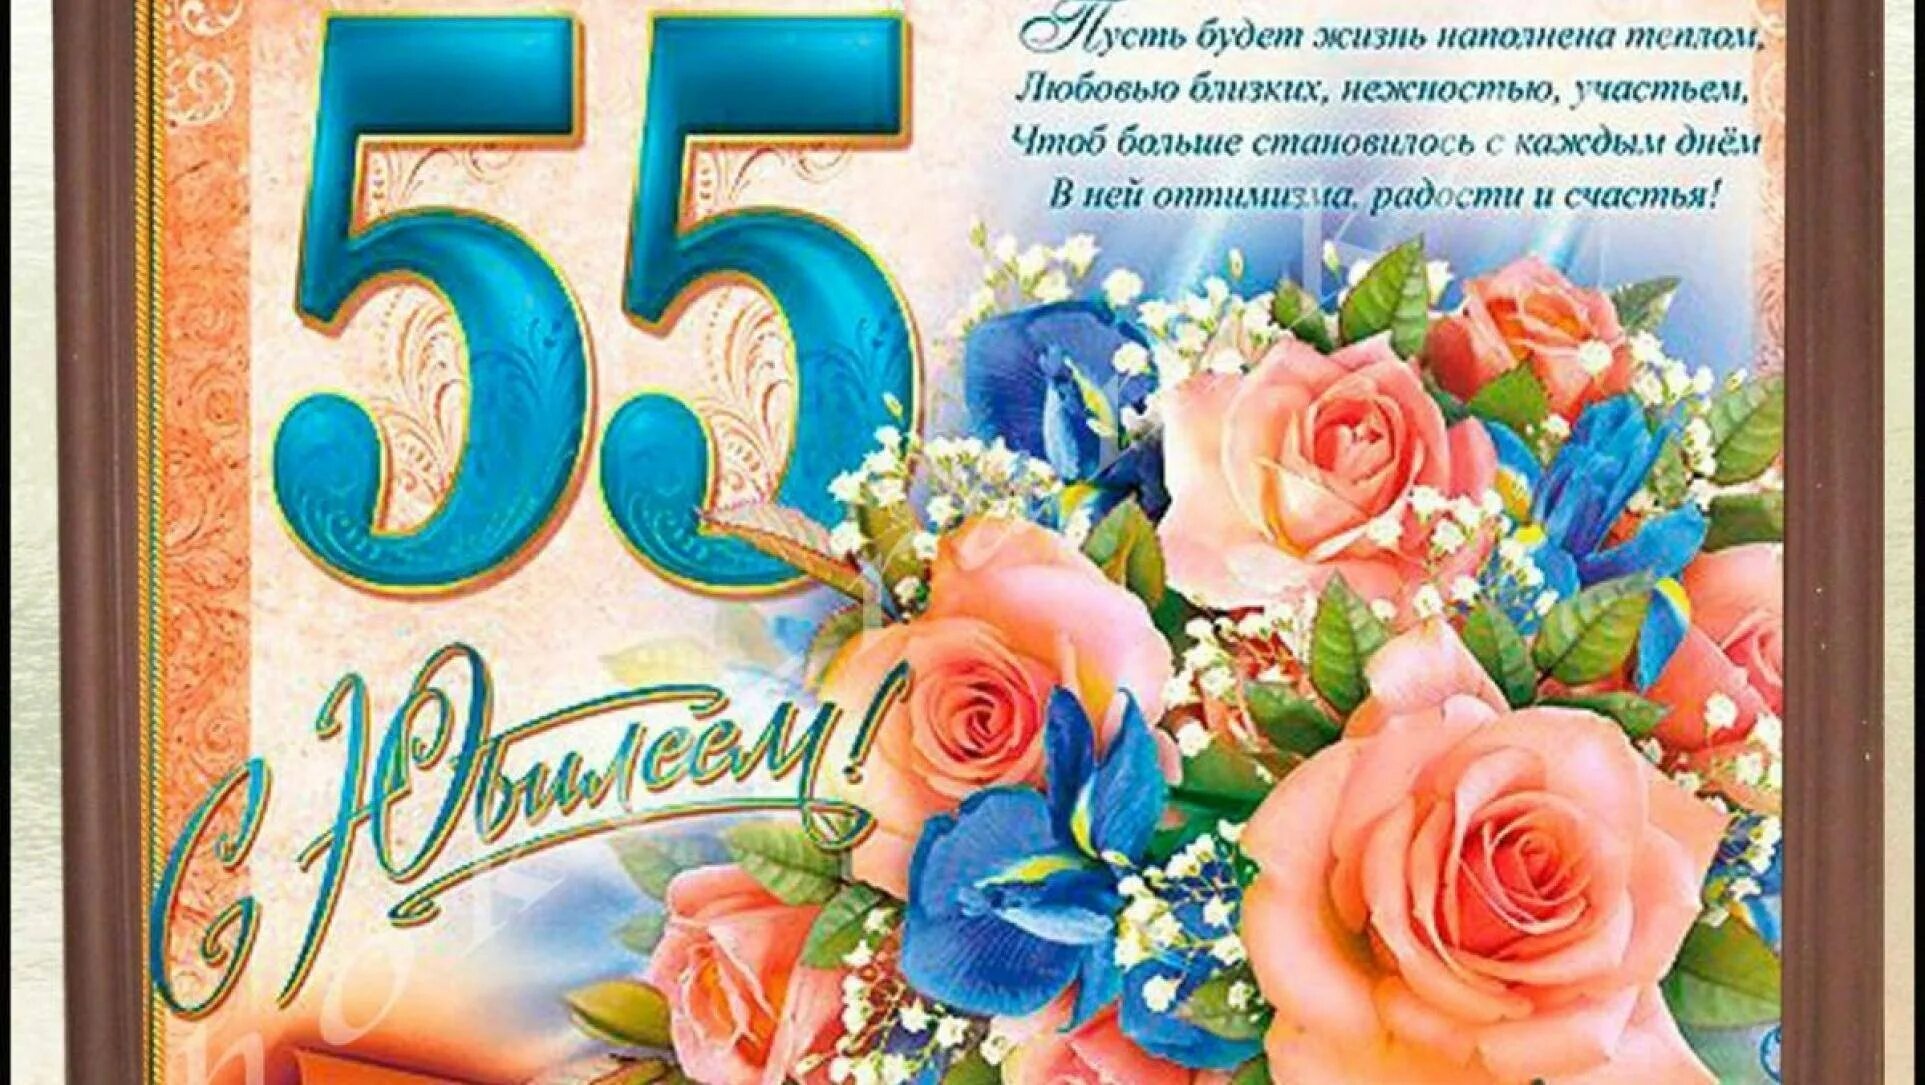 Красивое поздравление с юбилейным днем рождения. С юбилеем 55. Поздравление с юбилеем 55 женщине. Открытка "с юбилеем! 55". Открытка с юбилеем 55 лет женщине с поздравлением.